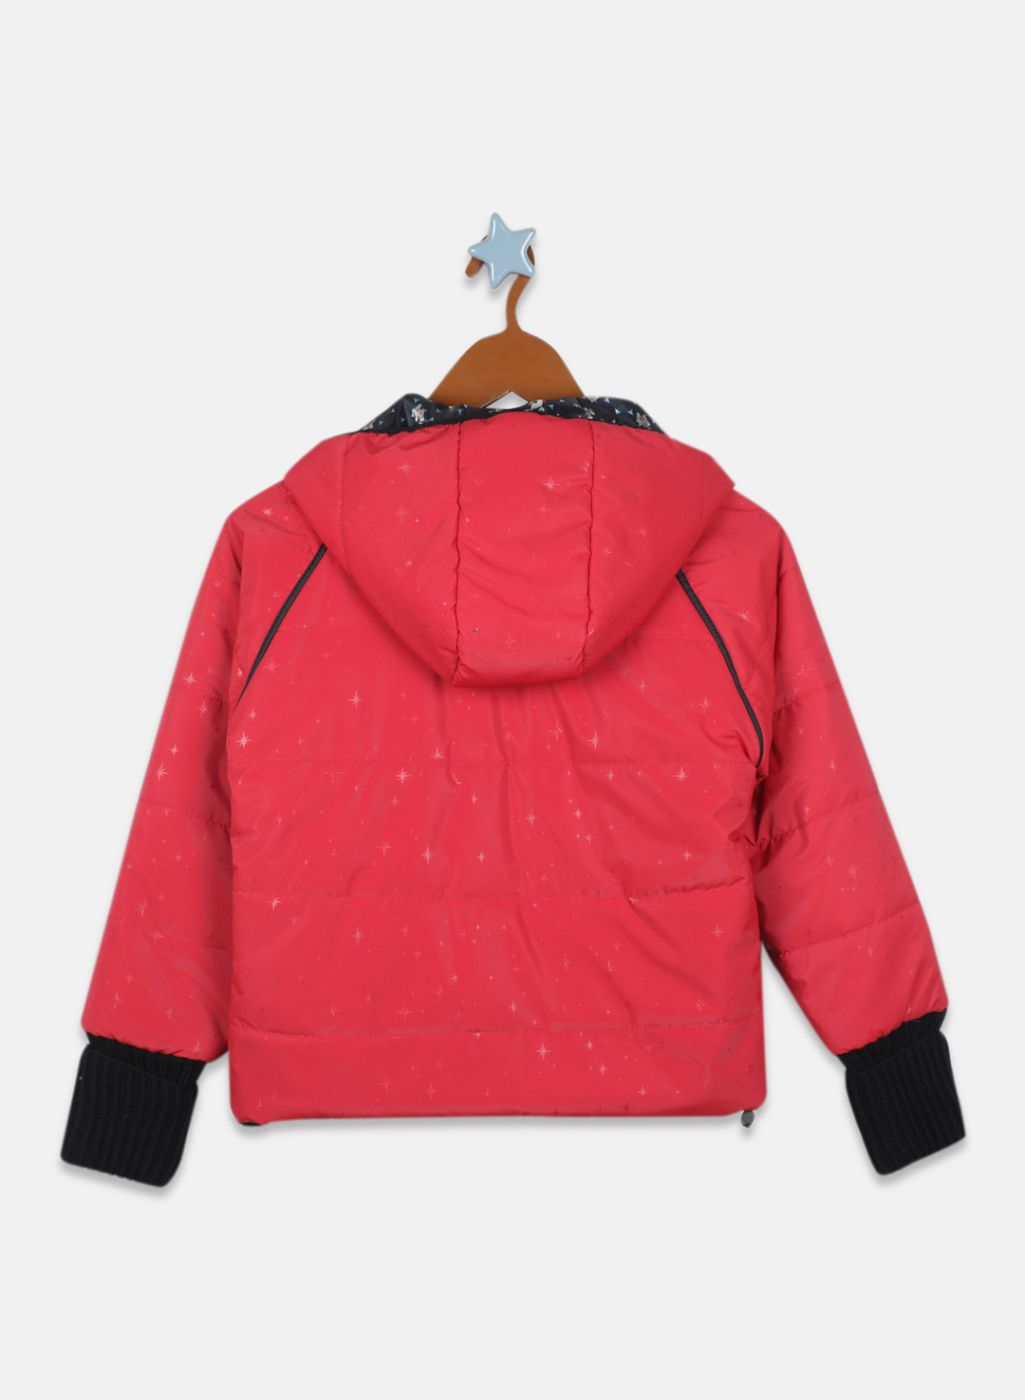 Girls Red Printed Jacket